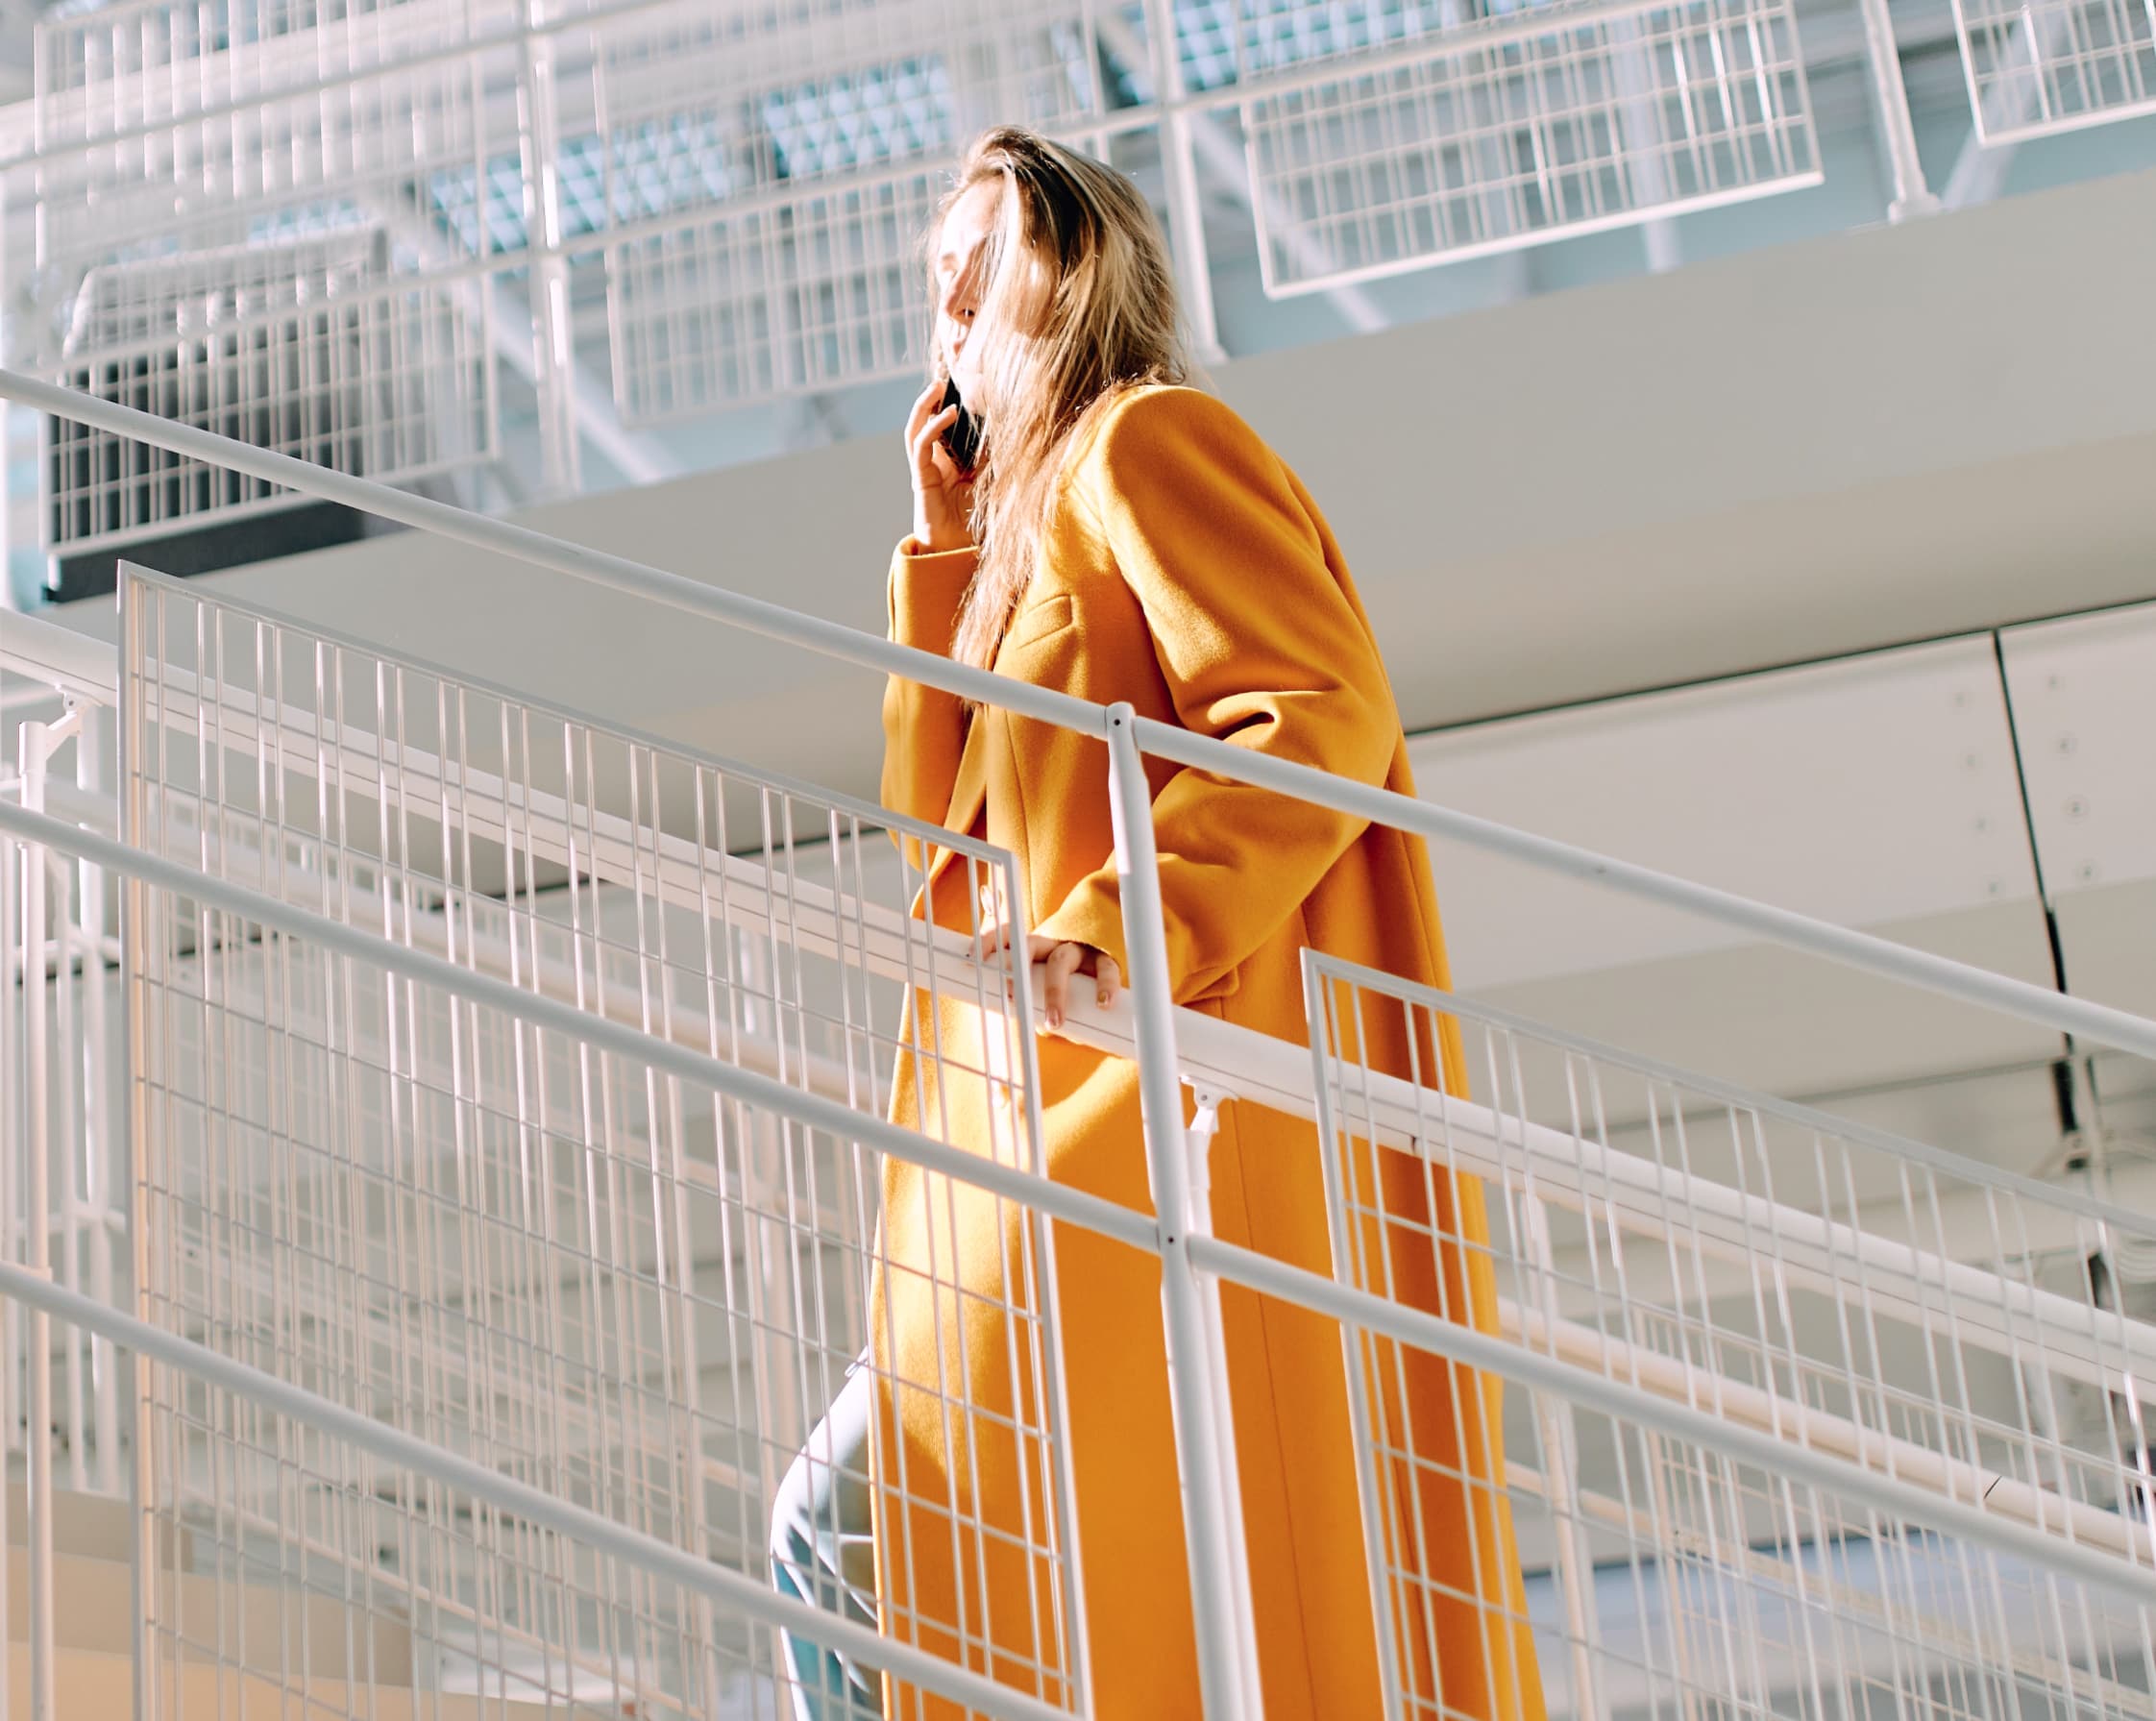 Frau im orangen Mantel läuft die Treppe hoch und zum nächsten Schritt ihrer Karriere